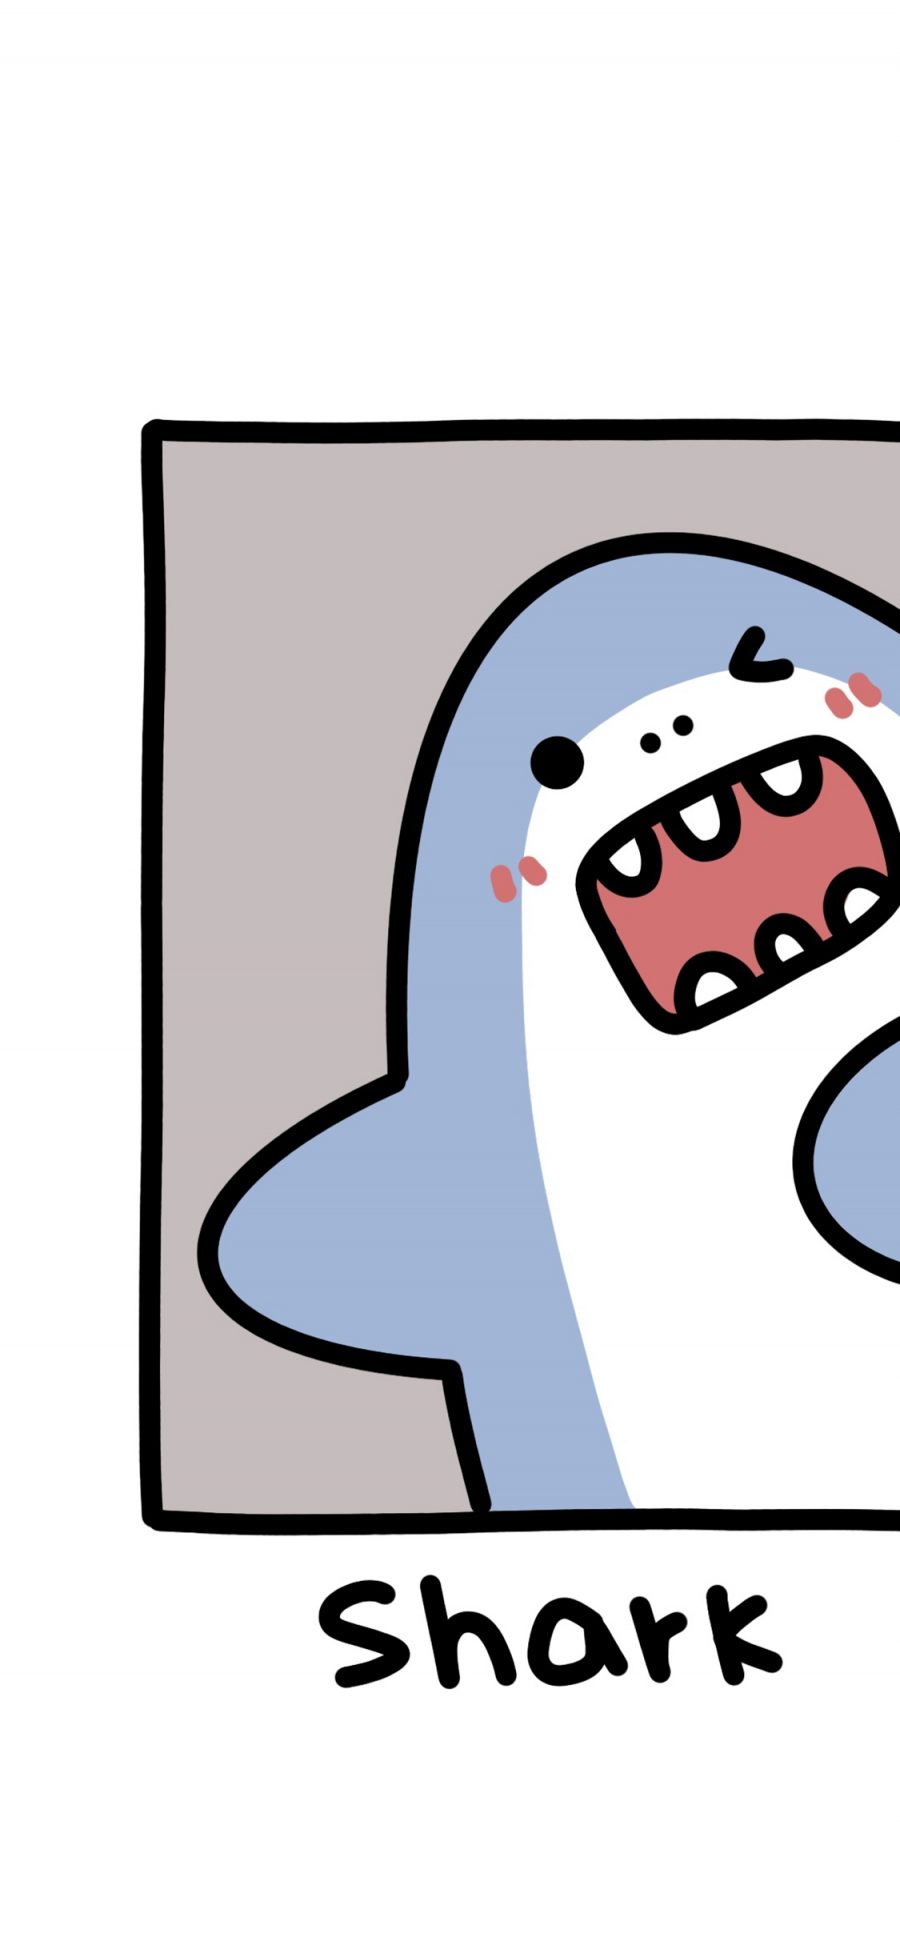 [2436×1125]小鲨鱼 shark 卡通 苹果手机动漫壁纸图片